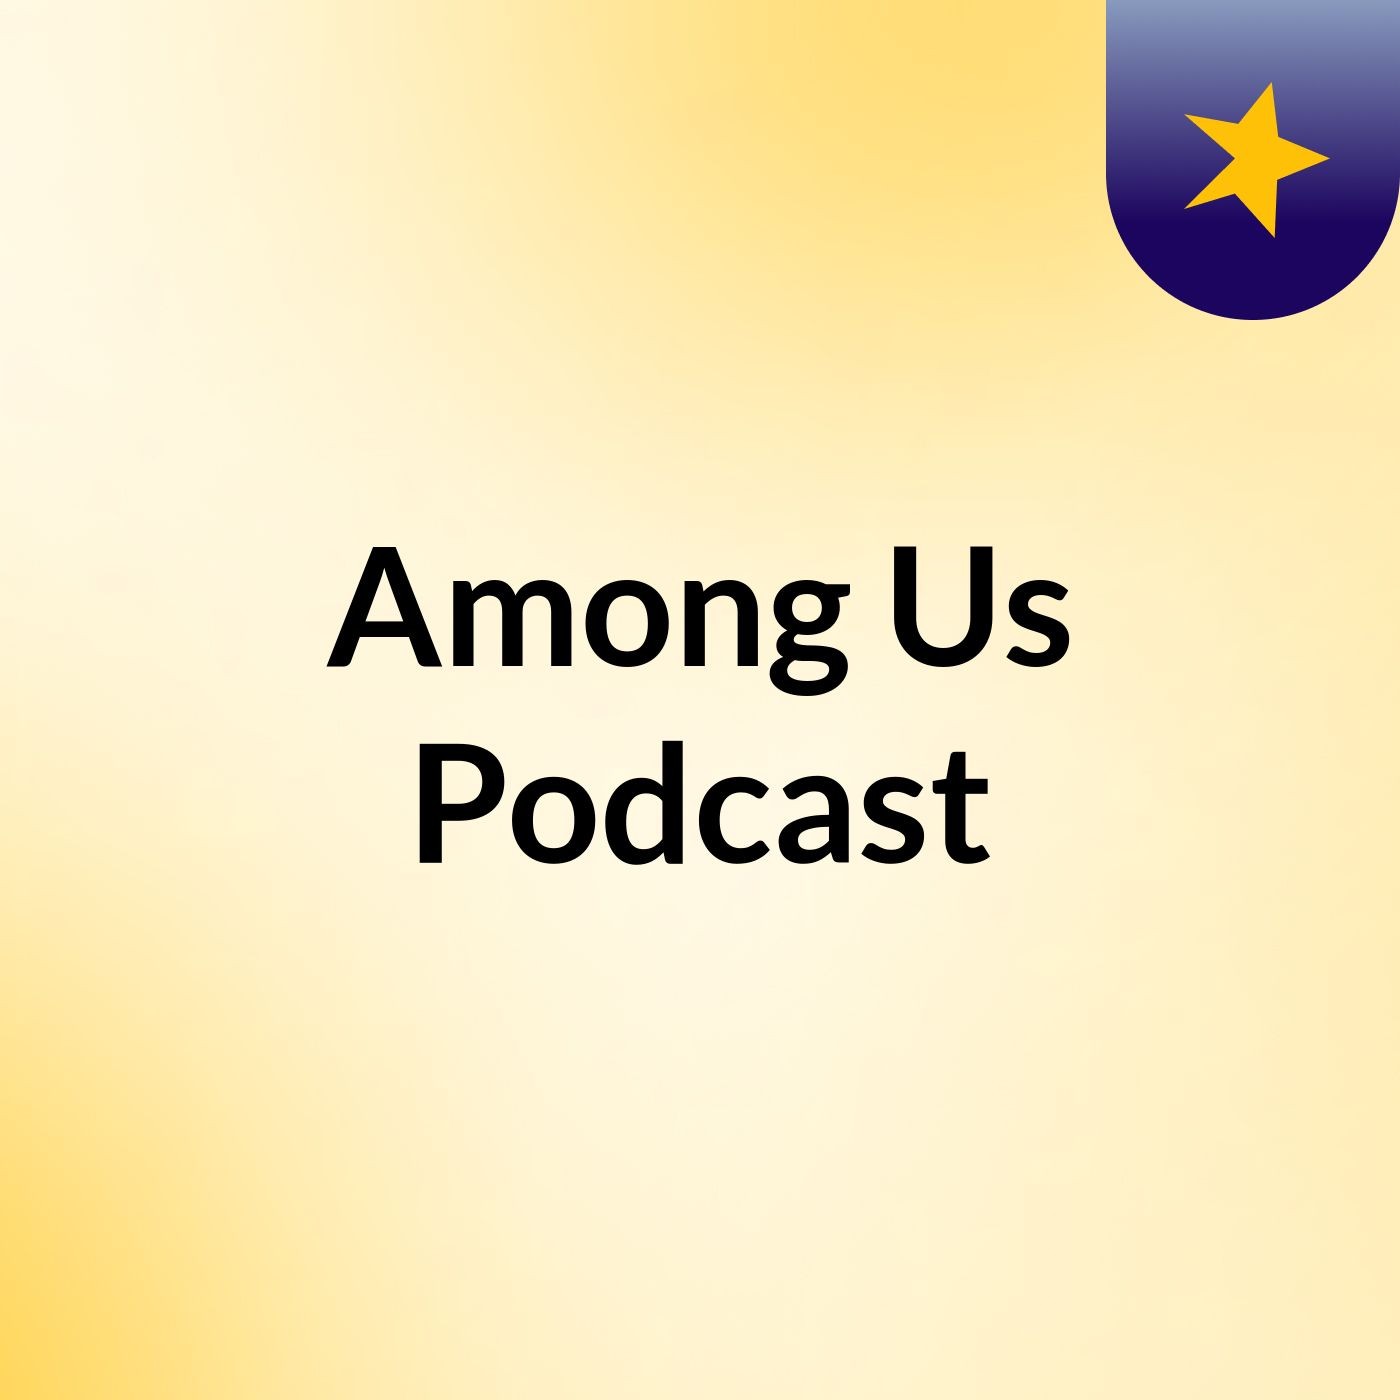 Episode 3 - Among Us Podcast